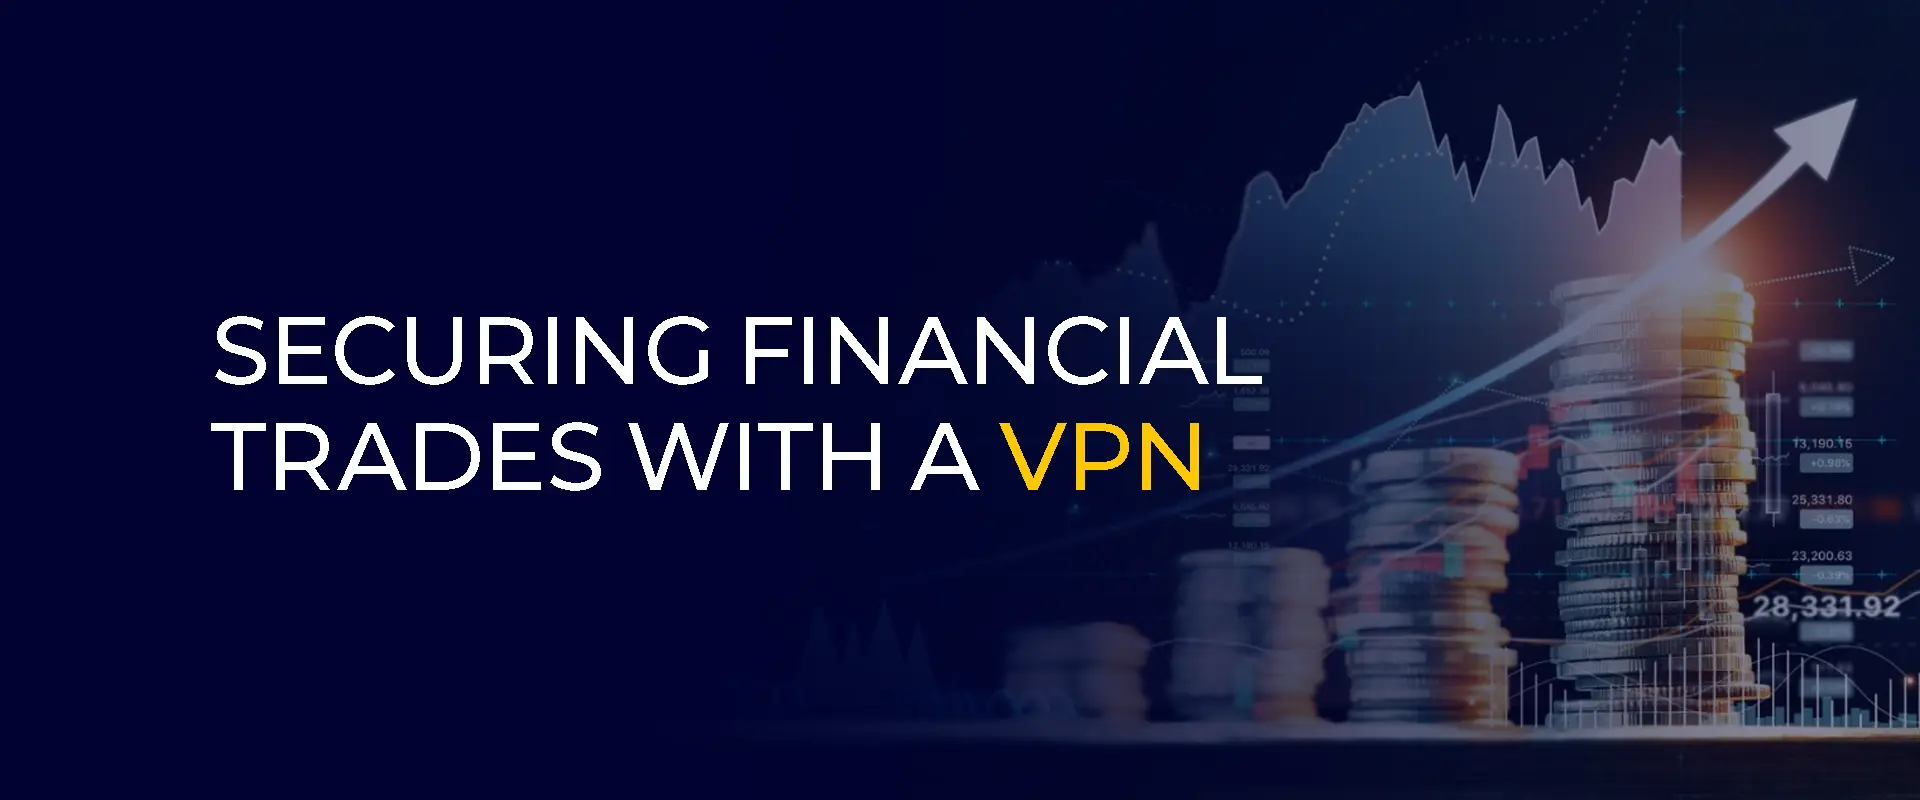 Mengamankan Perdagangan Finansial Dengan VPN